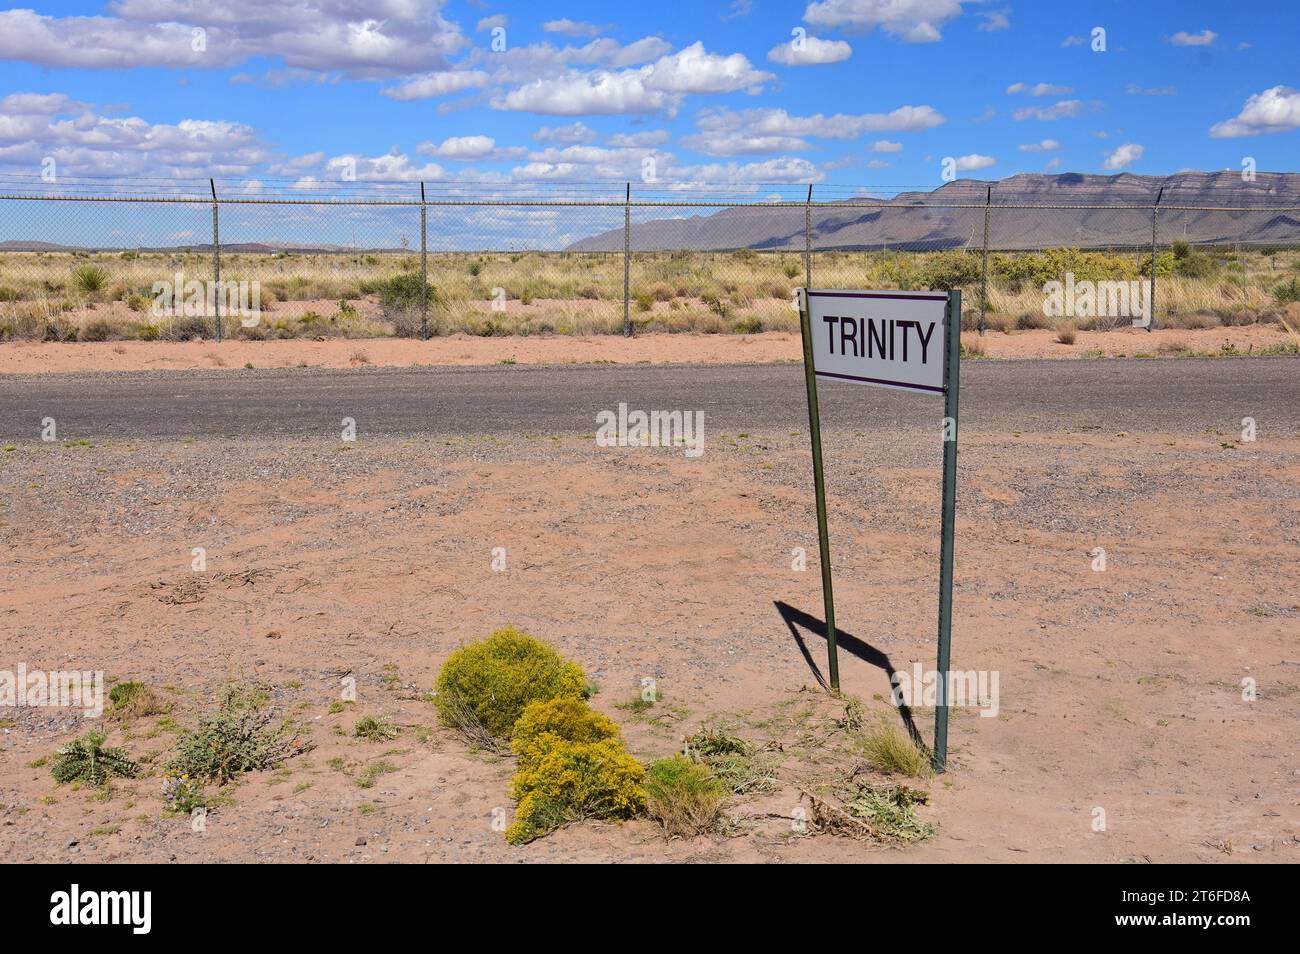 Eingang zum trinity-Standort, an der Raketenreichweite White Sands, New mexico, wo die erste Atombombe der Welt explodiert ist Stockfoto